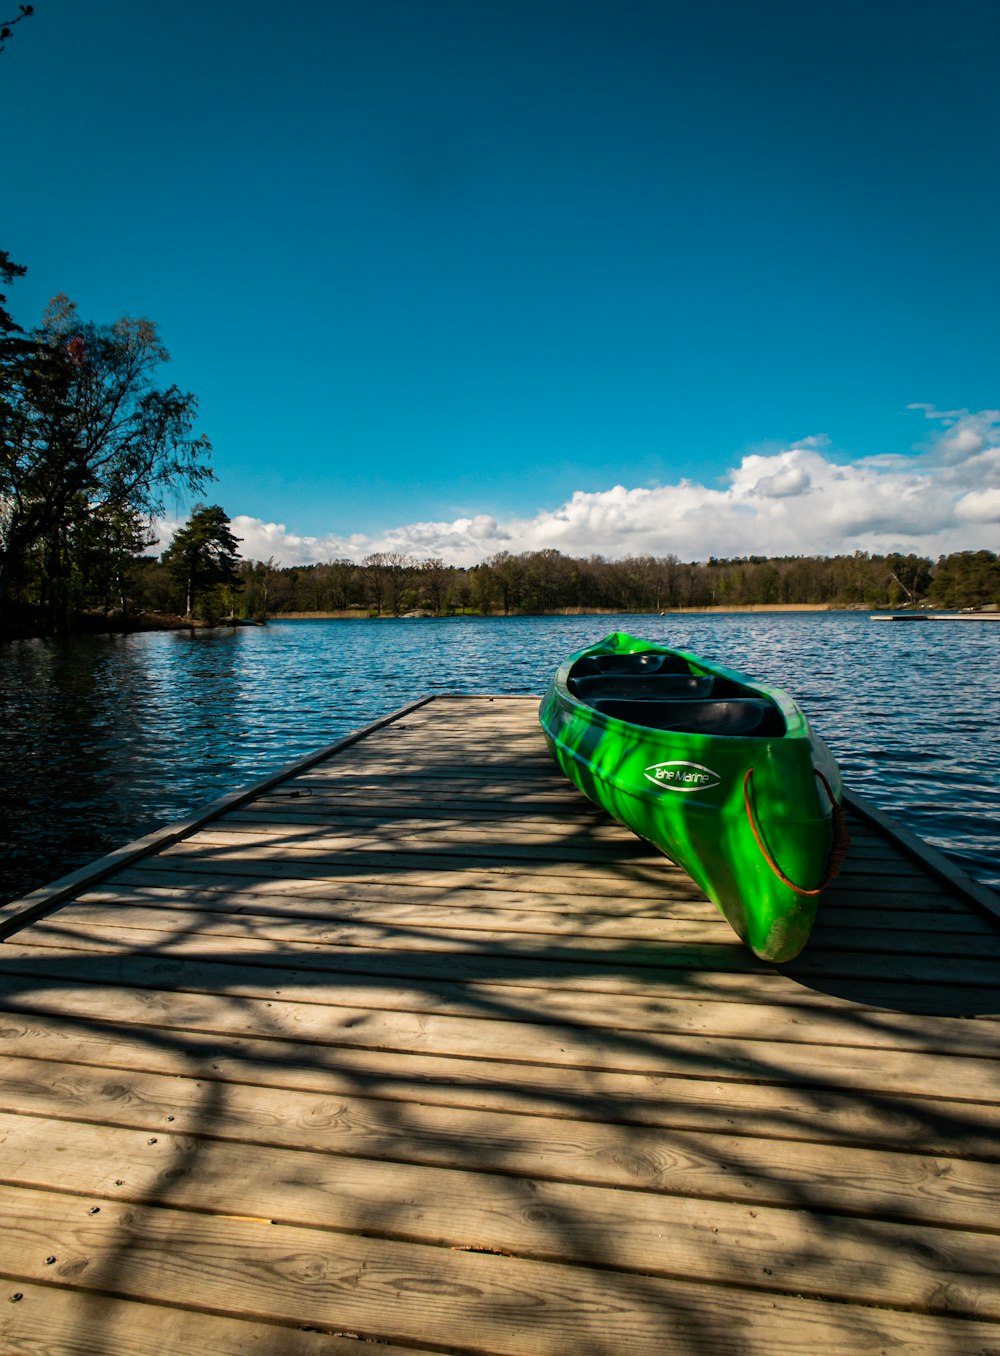 green kayak on brown wooden dock during daytime